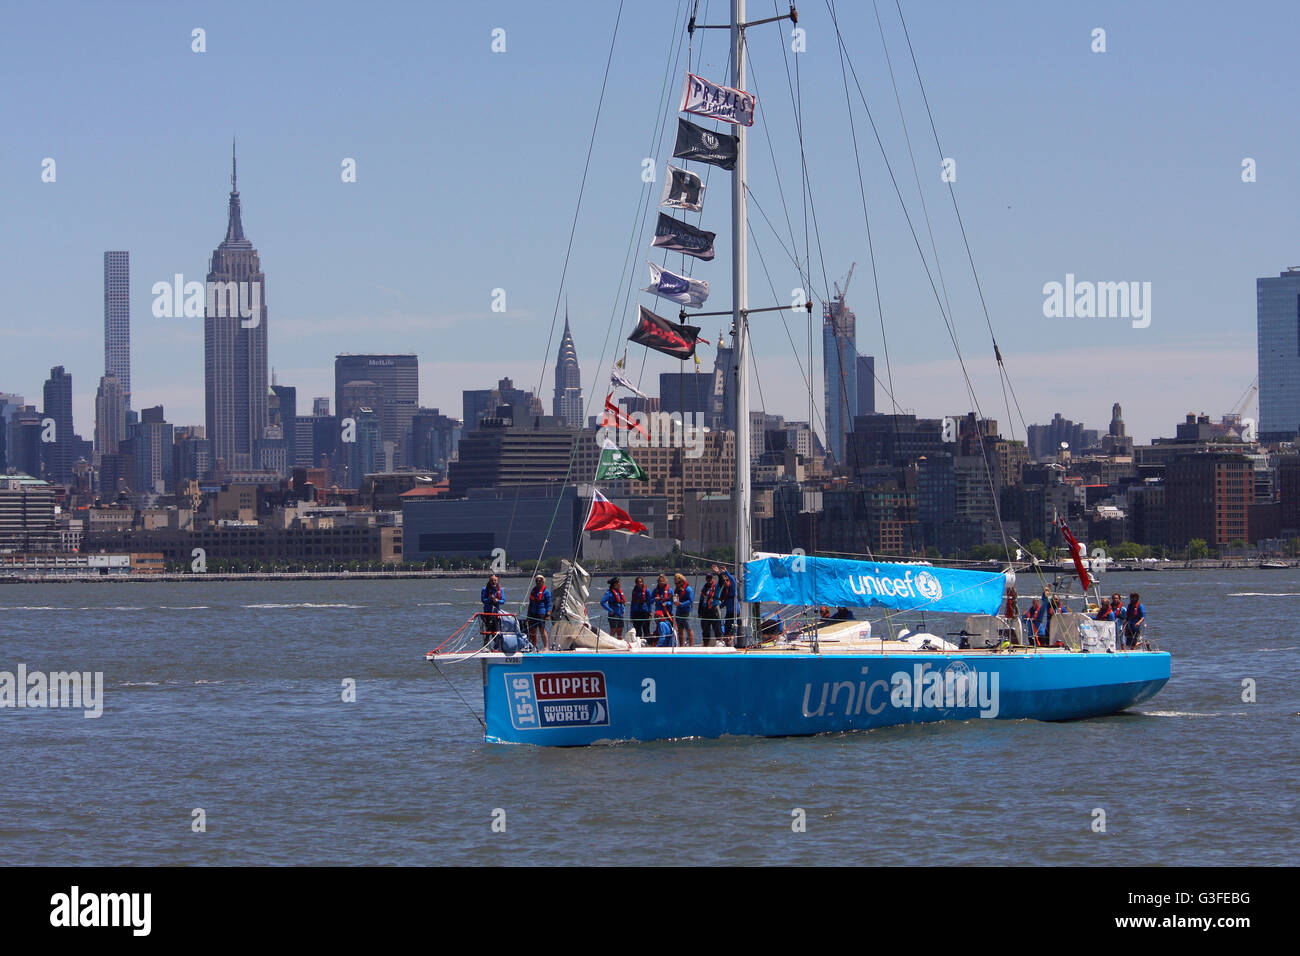 New York, USA. 10 Juin, 2016. L'équipe de l'UNICEF arrive à New York à la fin de la course des Amériques dans le cadre de la Clipper Round the World Yacht Race Crédit : Adam Stoltman/Alamy Live News Banque D'Images